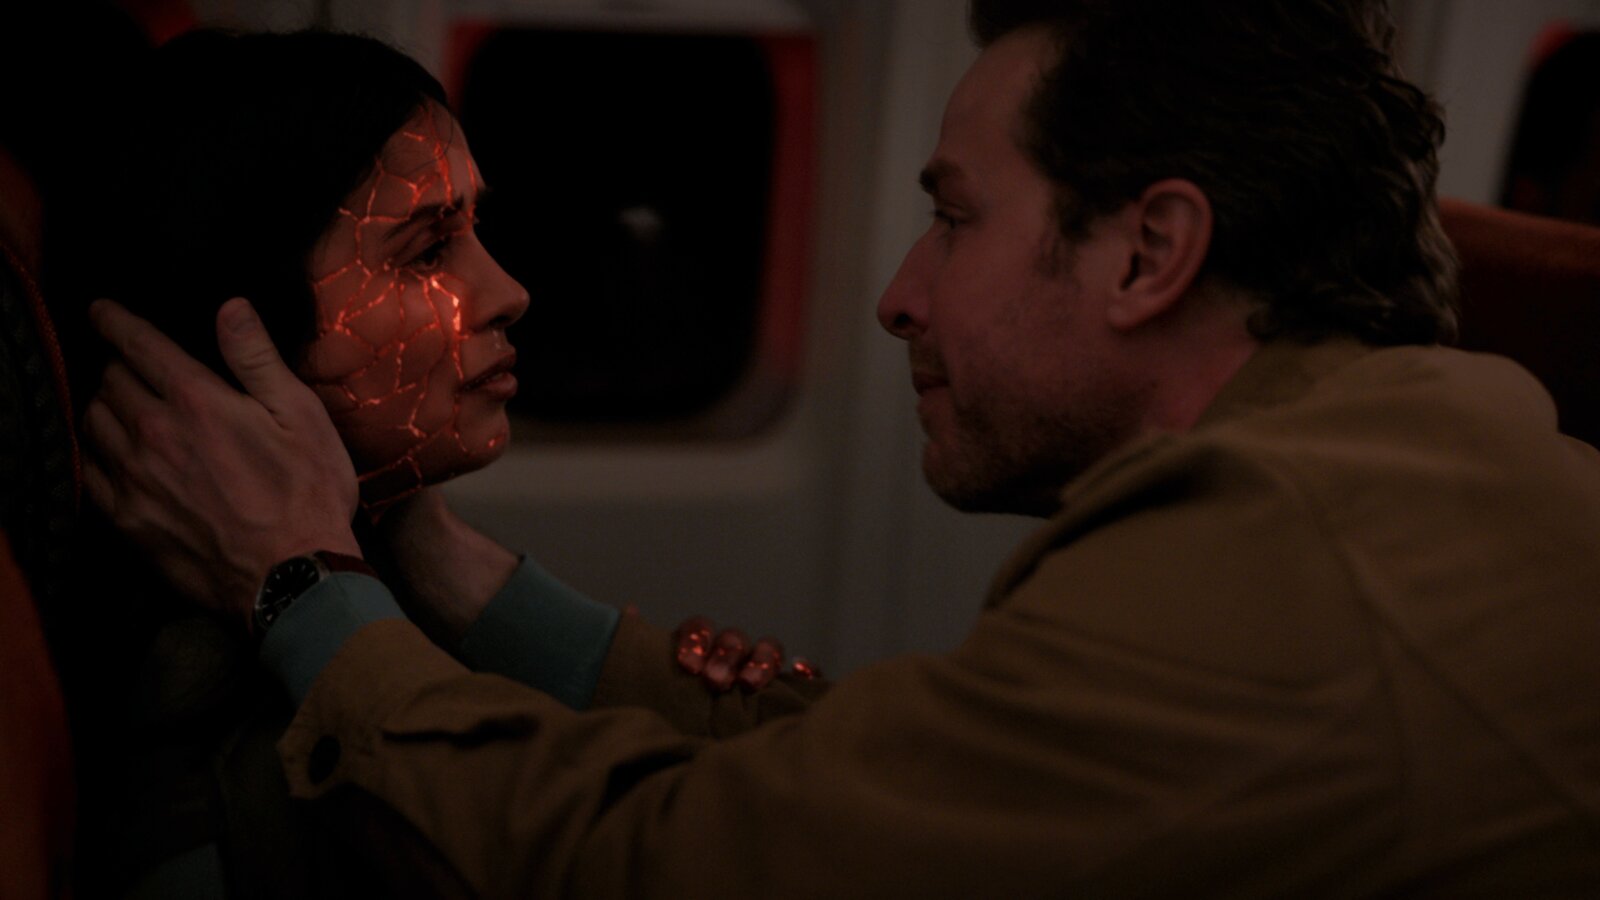 Eine Szene aus der finalen Episode "Final Boarding" von Manifest, Staffel 4: Saanvi hat rote Risse im Gesicht und ist kurz davor, zu sterben, doch Ben, der ihr Gesicht in den Händen hält, will das nicht zulassen.